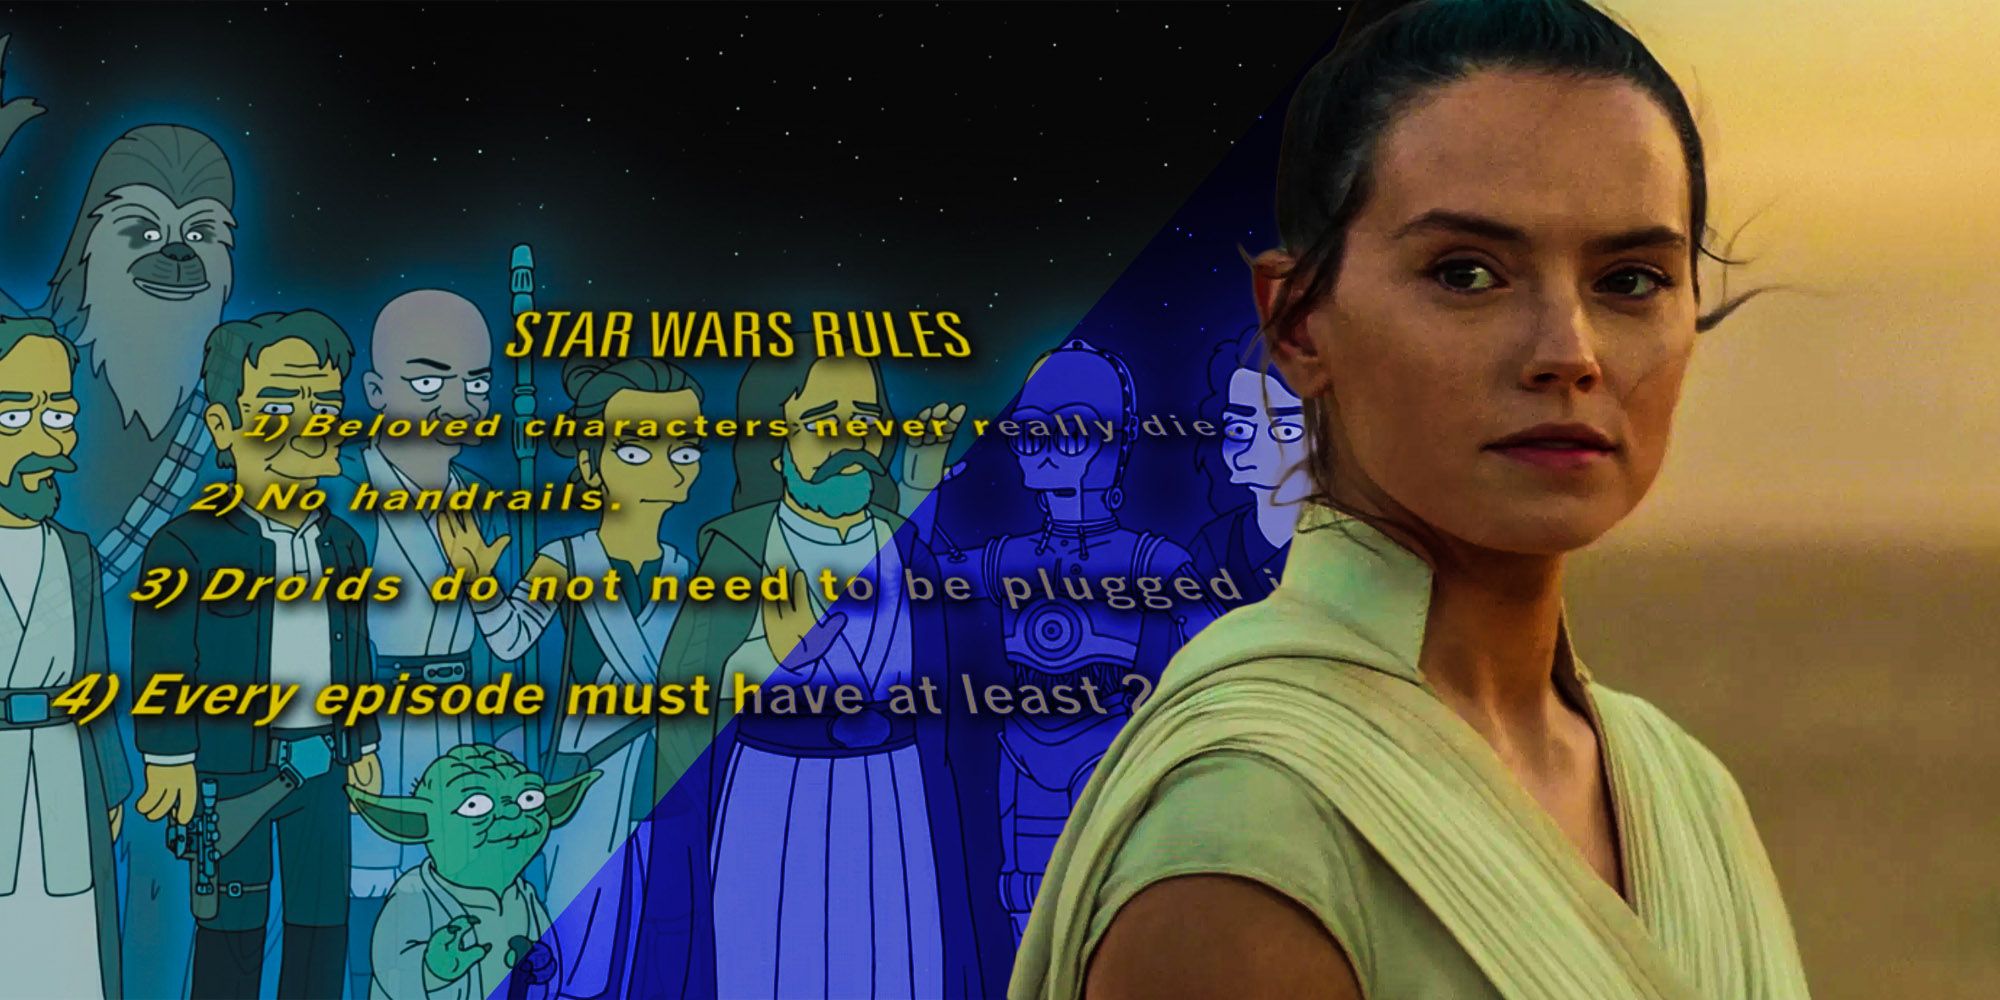 Los Simpson acaban de trollear las 4 reglas de las películas de Star Wars